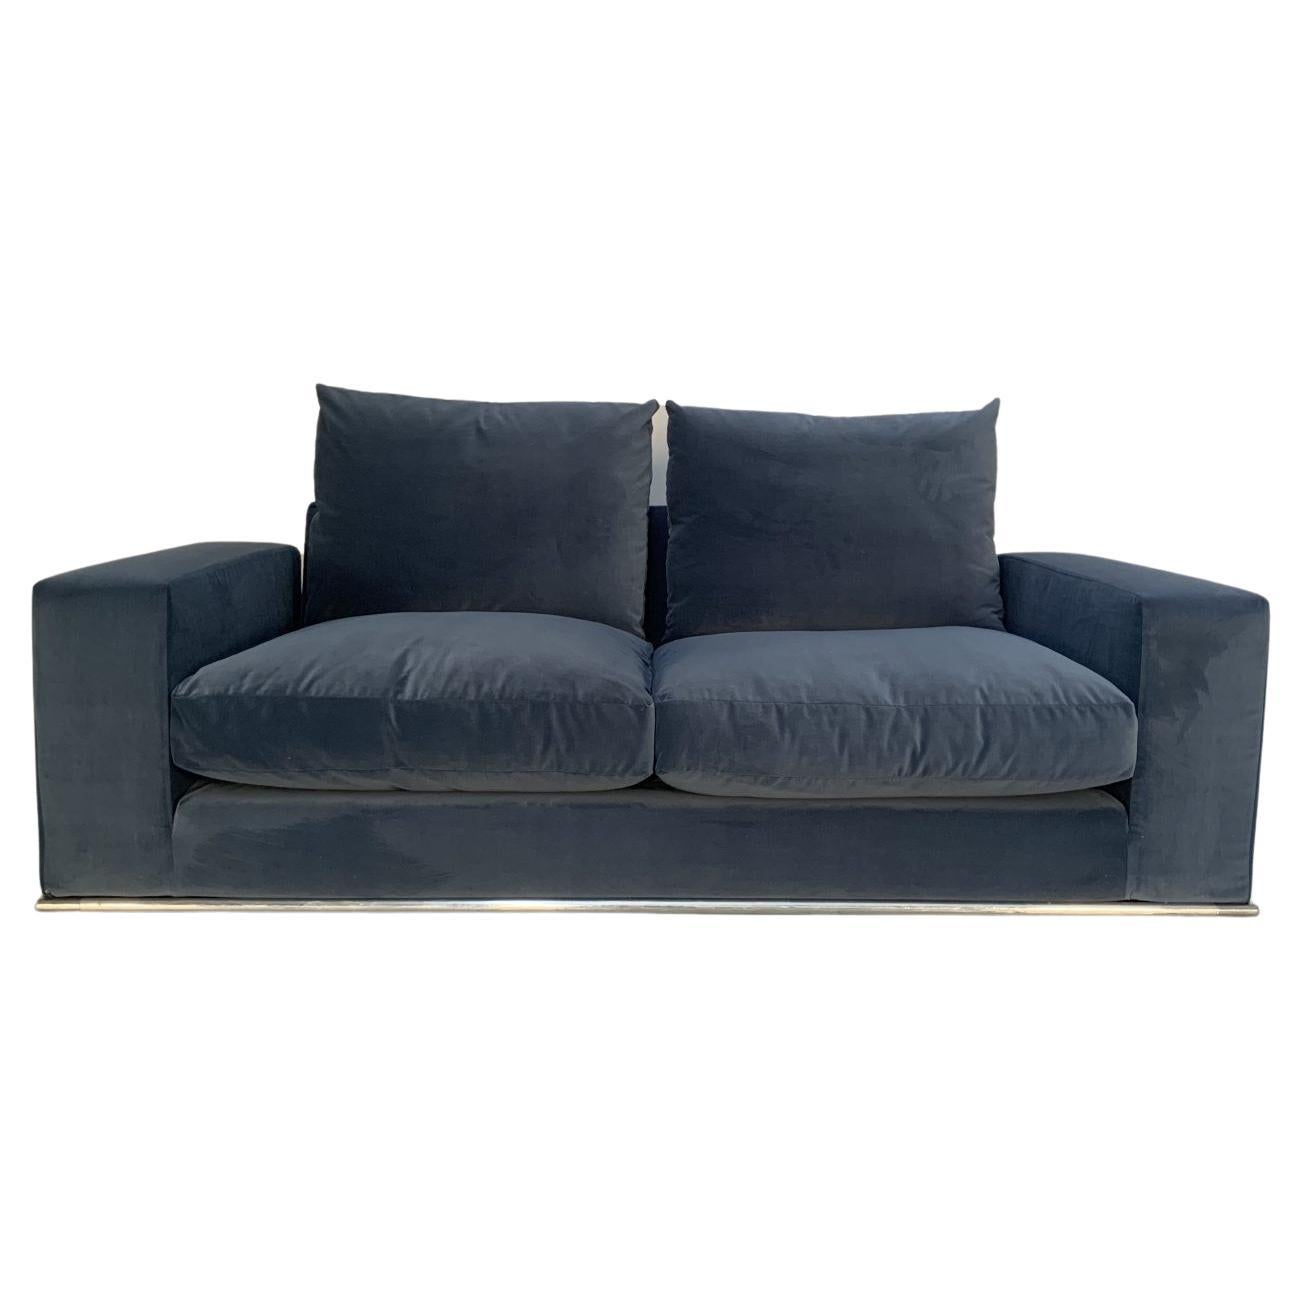 B&B Italia “Marcel” 2.5-Seat Sofa in Blue Velvet For Sale